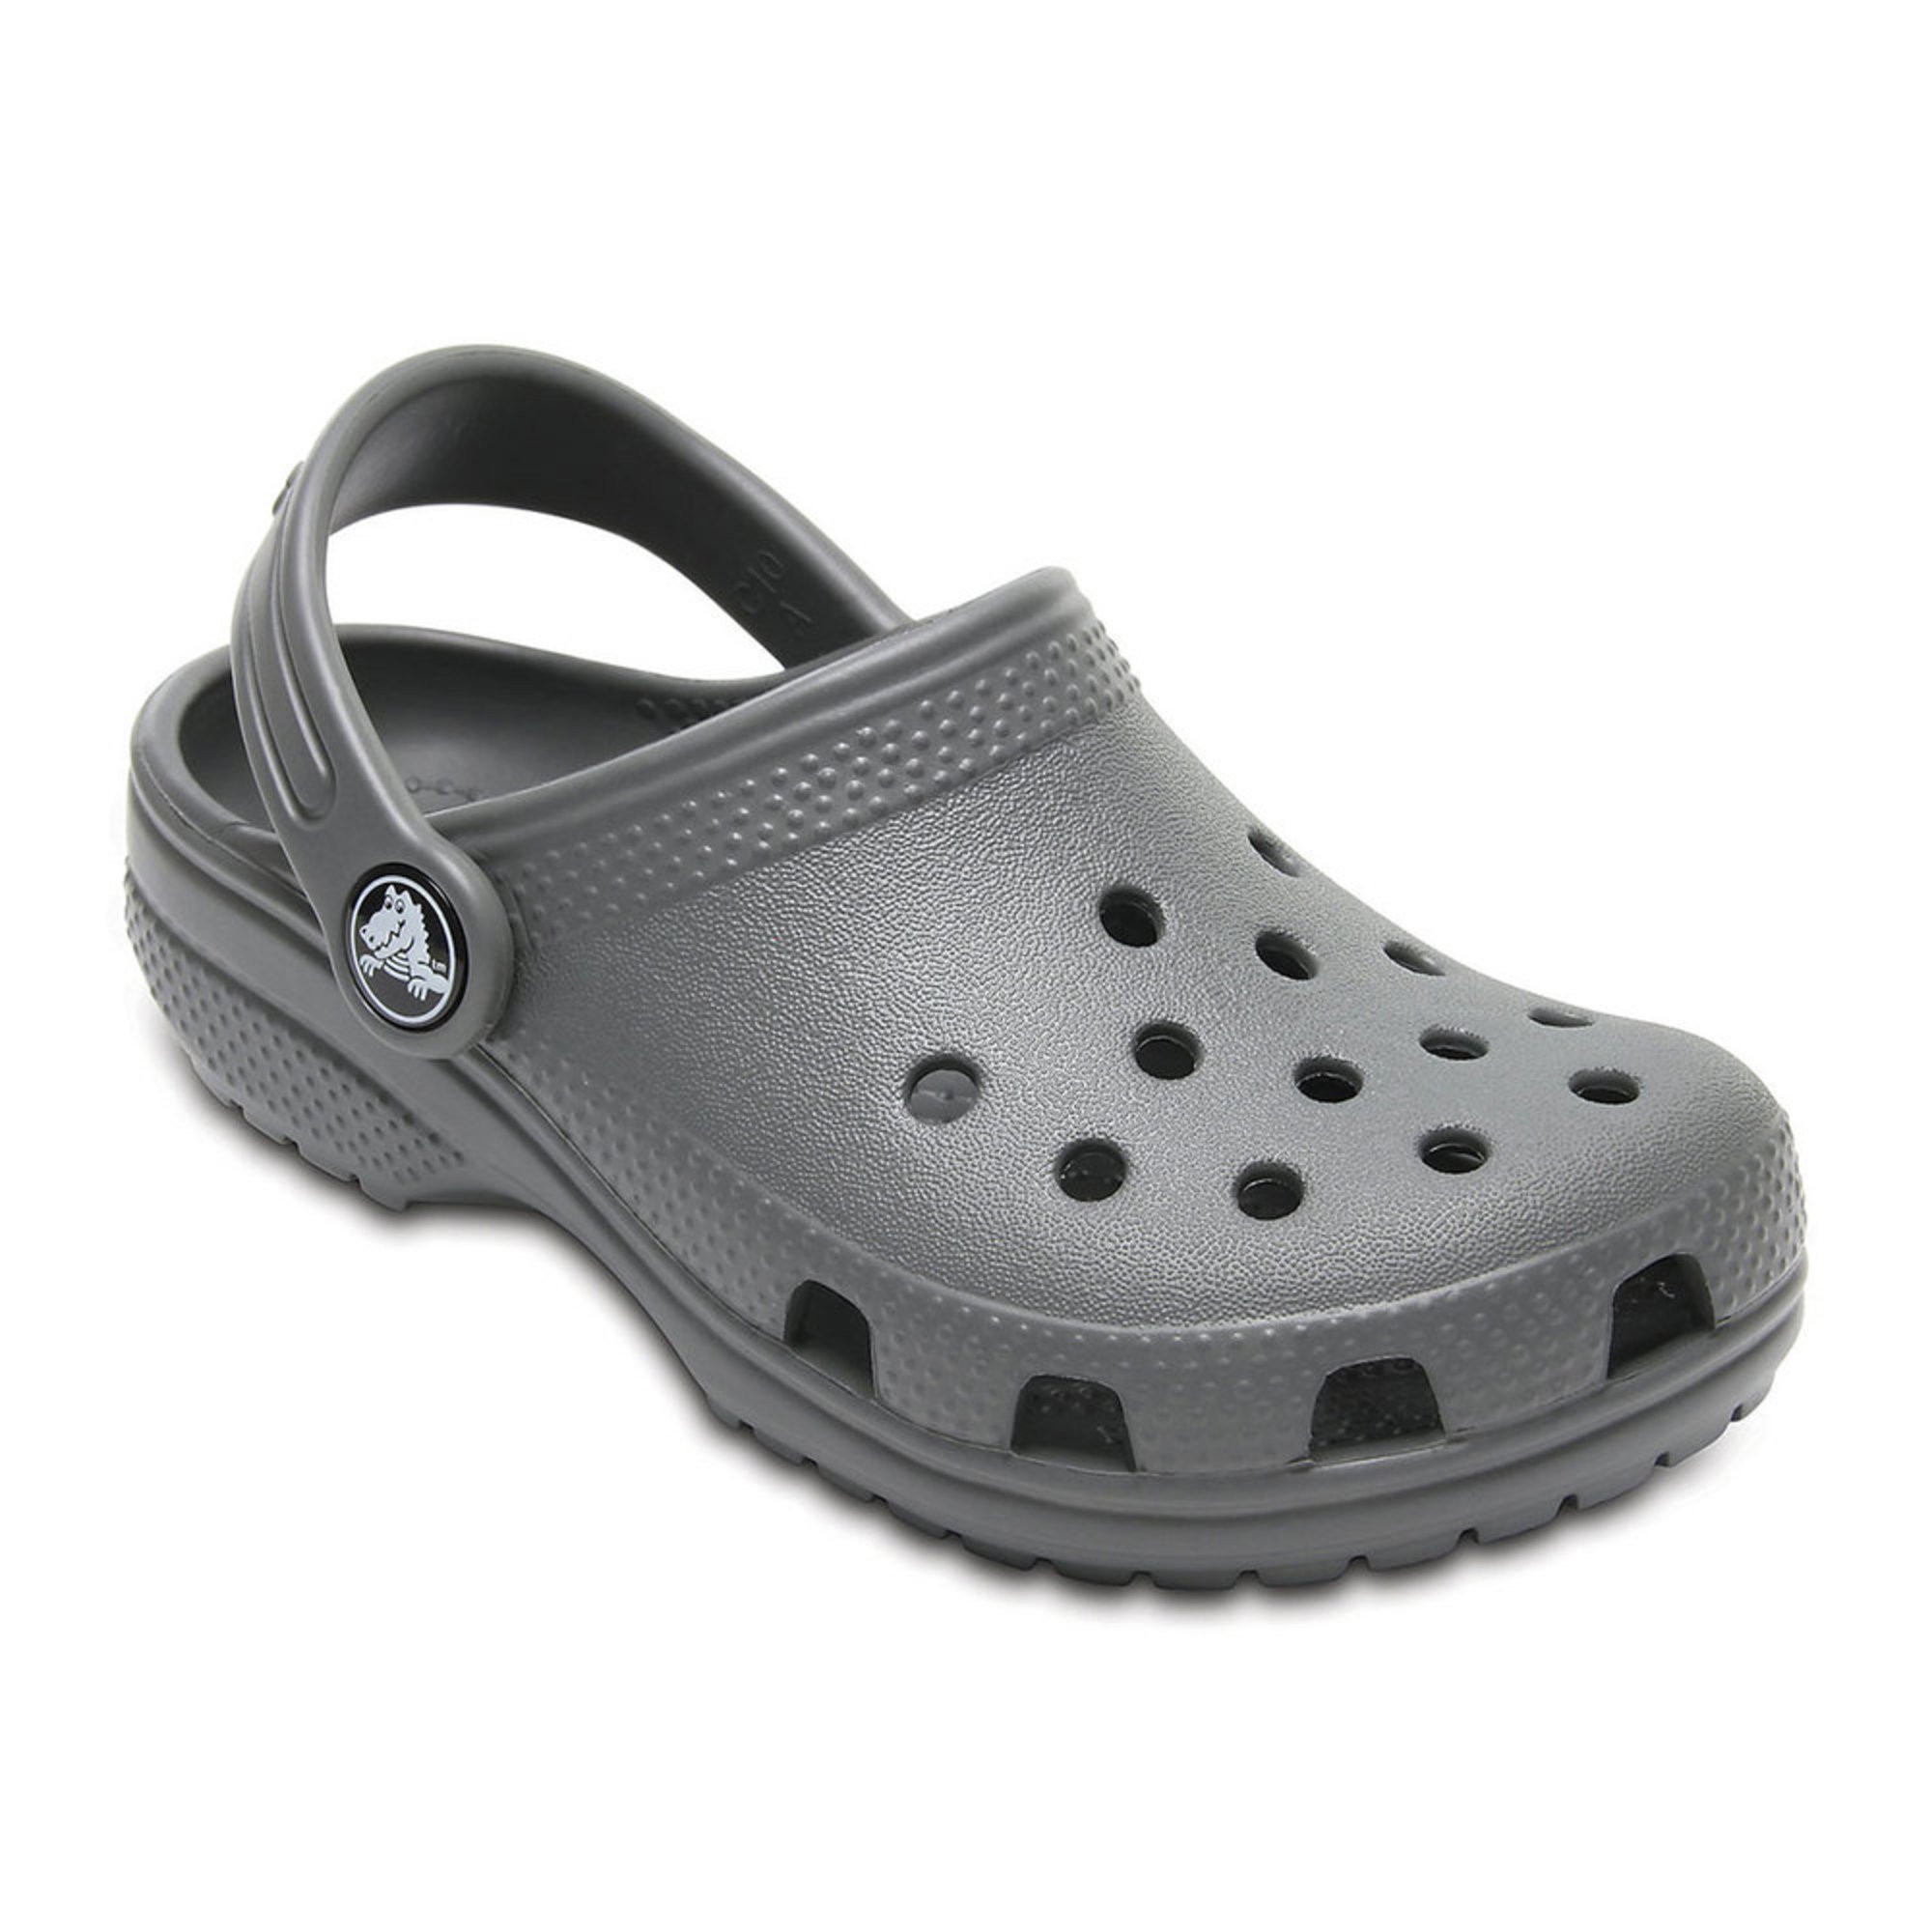 Crocs Classic Croc | Girls' Shoes | Shoes - Shop Your Navy Exchange ...